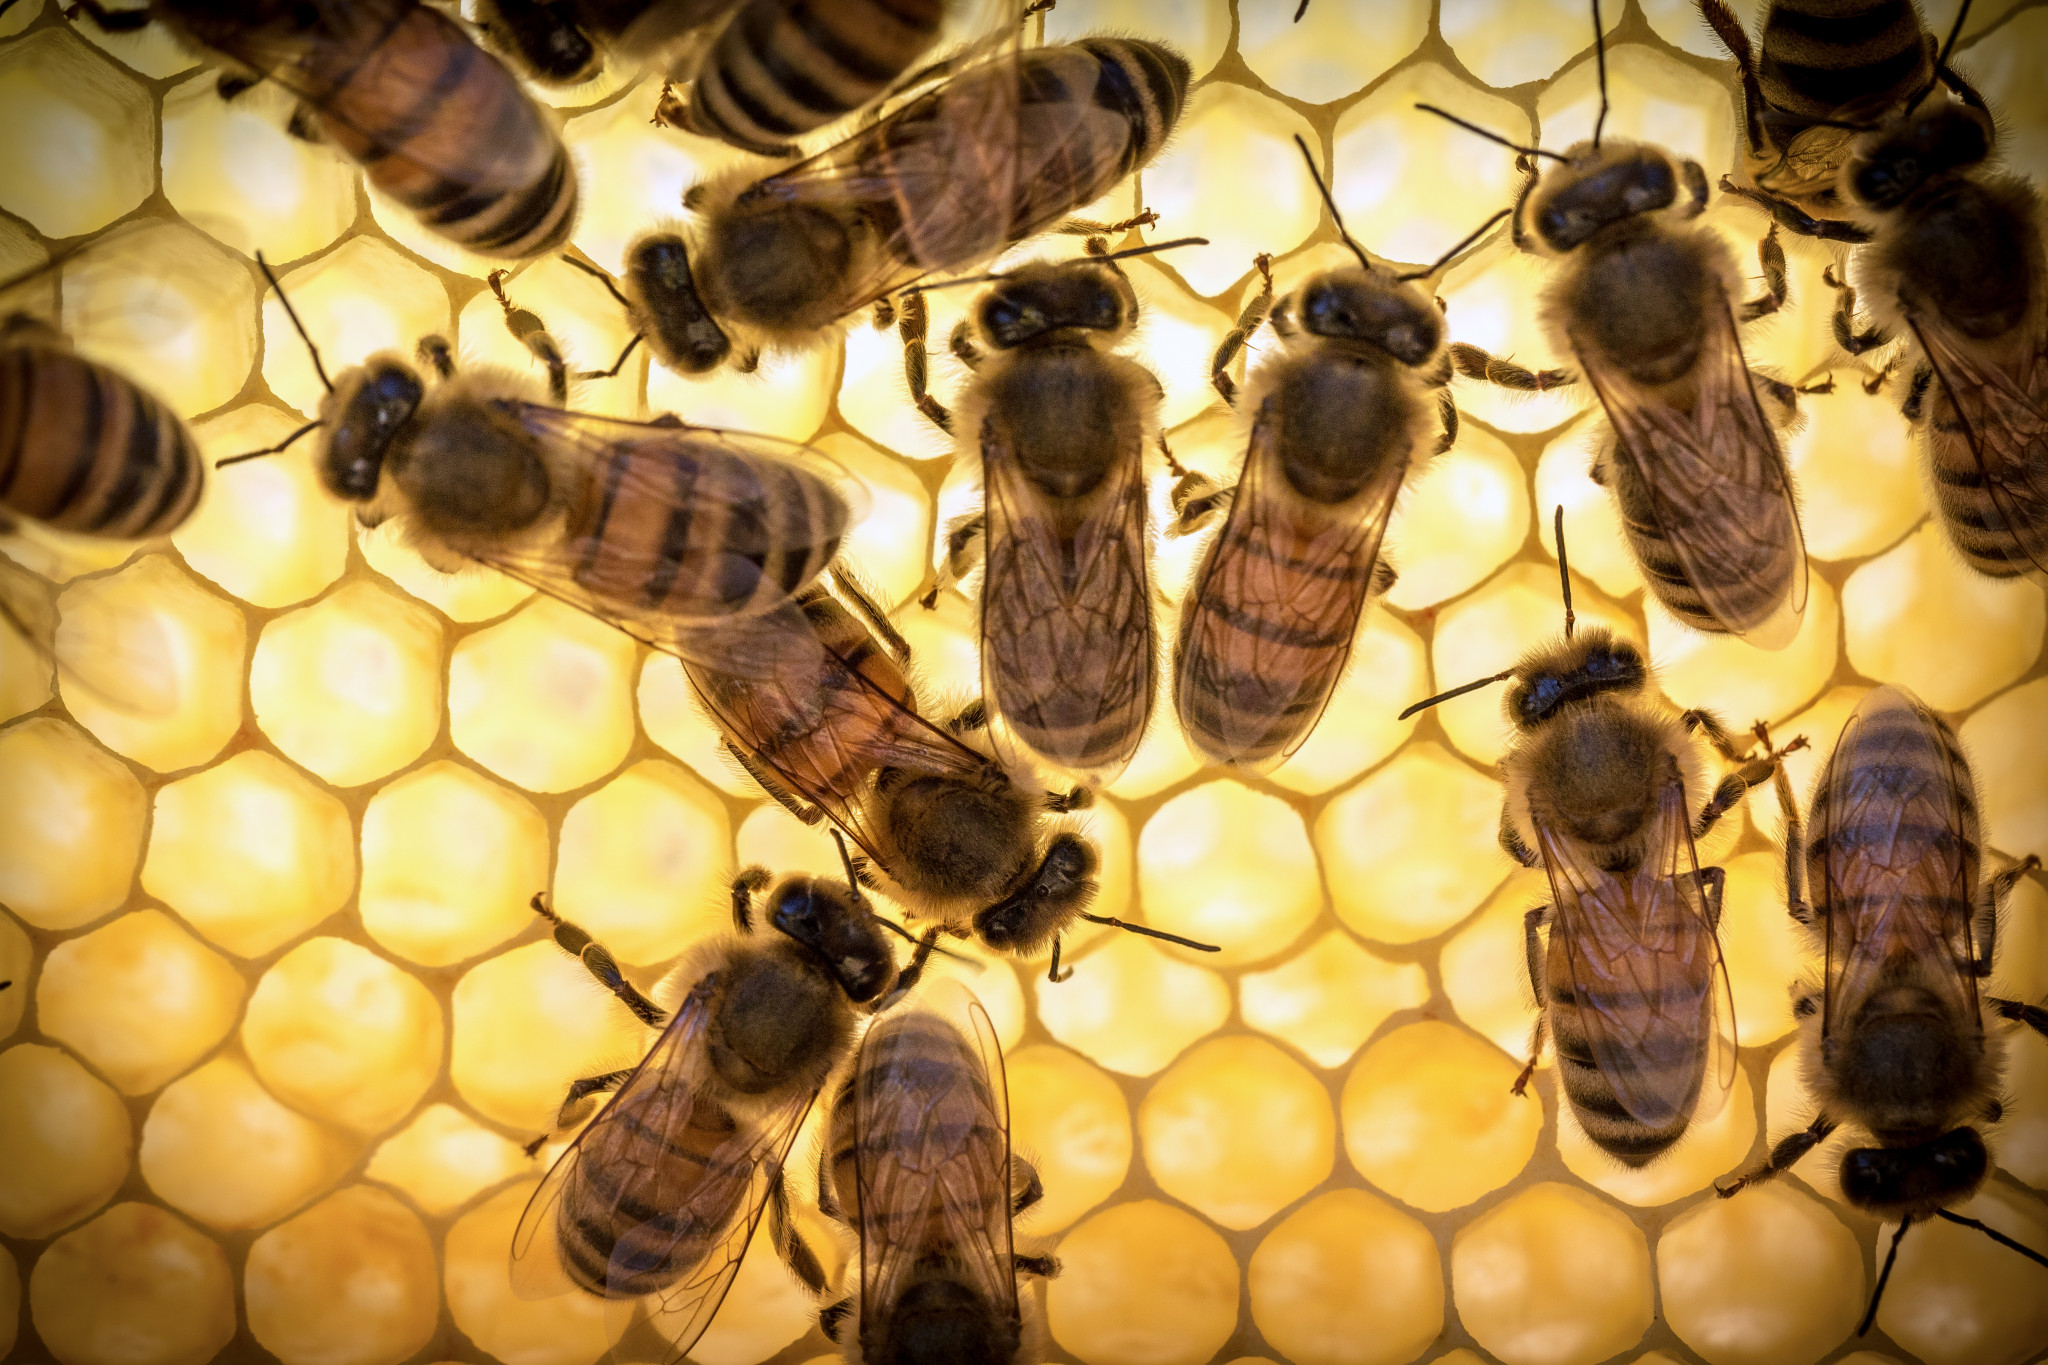 Bee royal želeja nav ieteicams lietot naktī, jo tās ietekmē palielina nervu aktivitāti un iespējamo bezmiegu